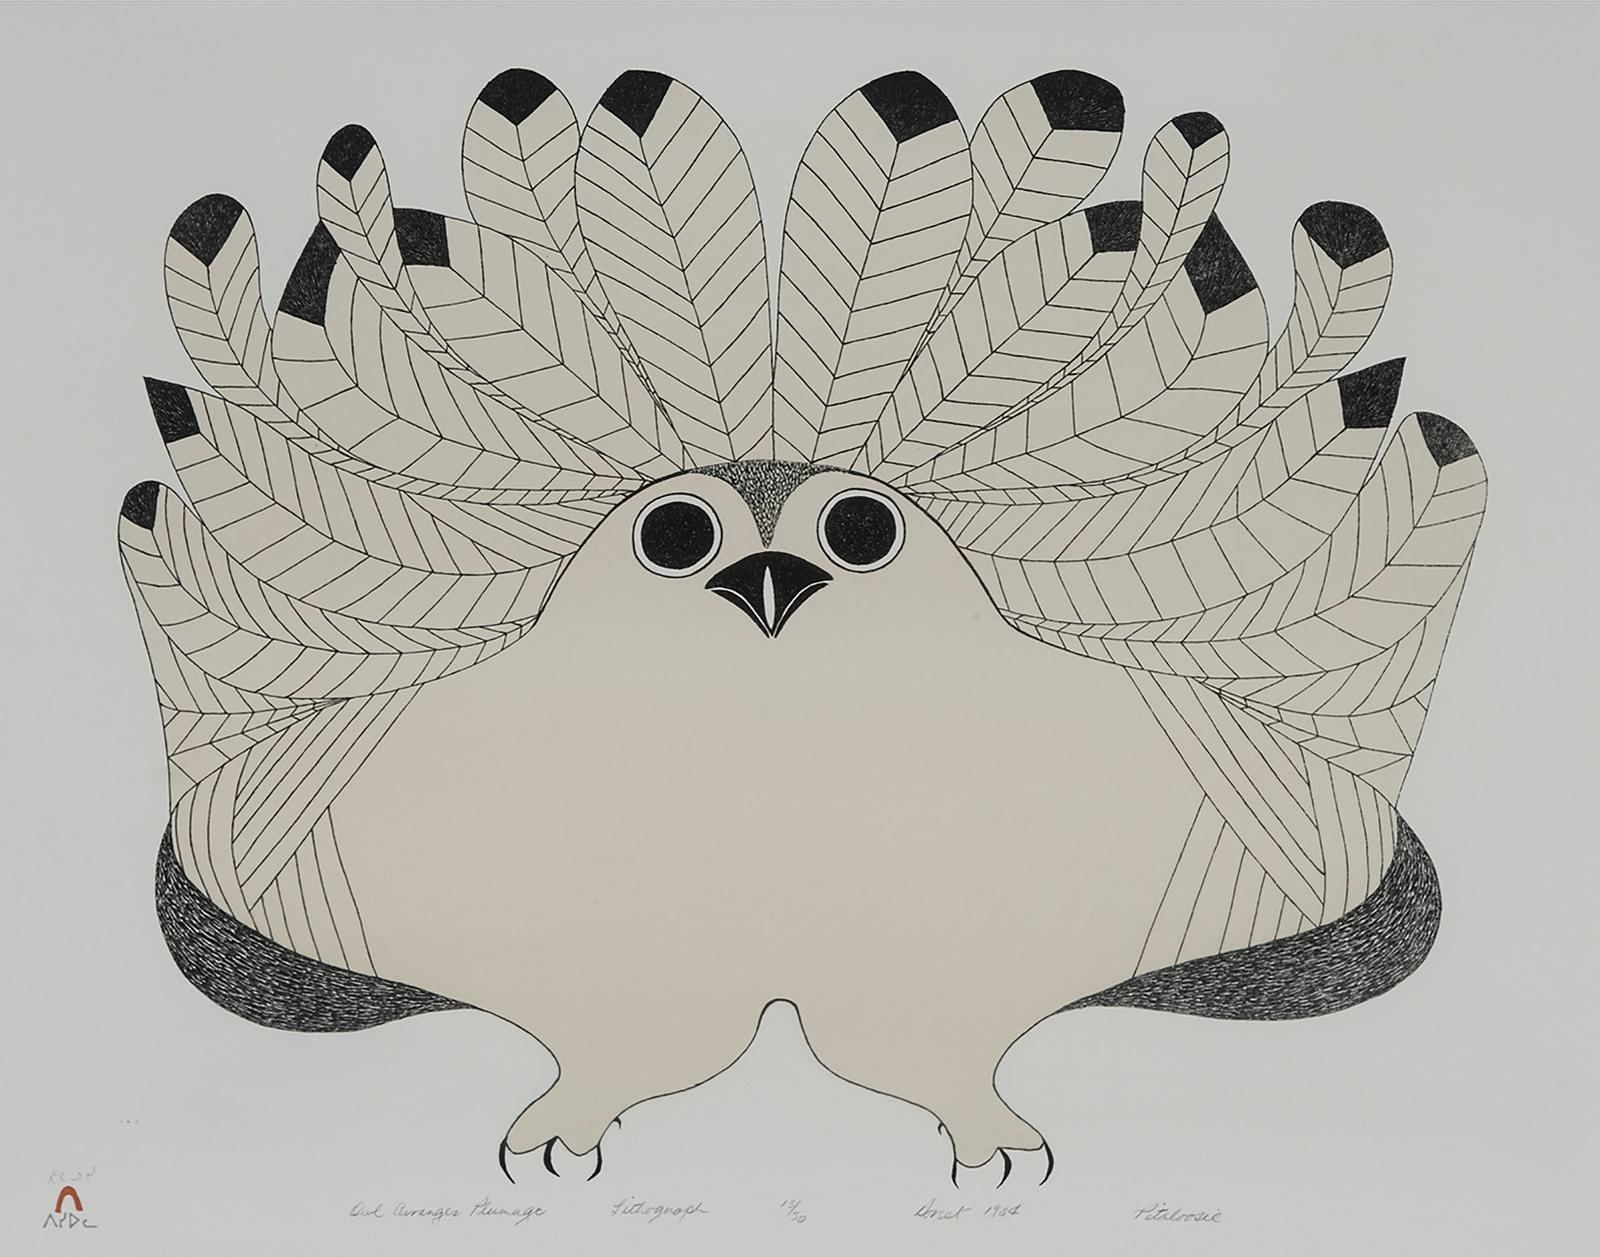 Pitaloosie Saila (1942-2021) - Owl Arranges Plumage